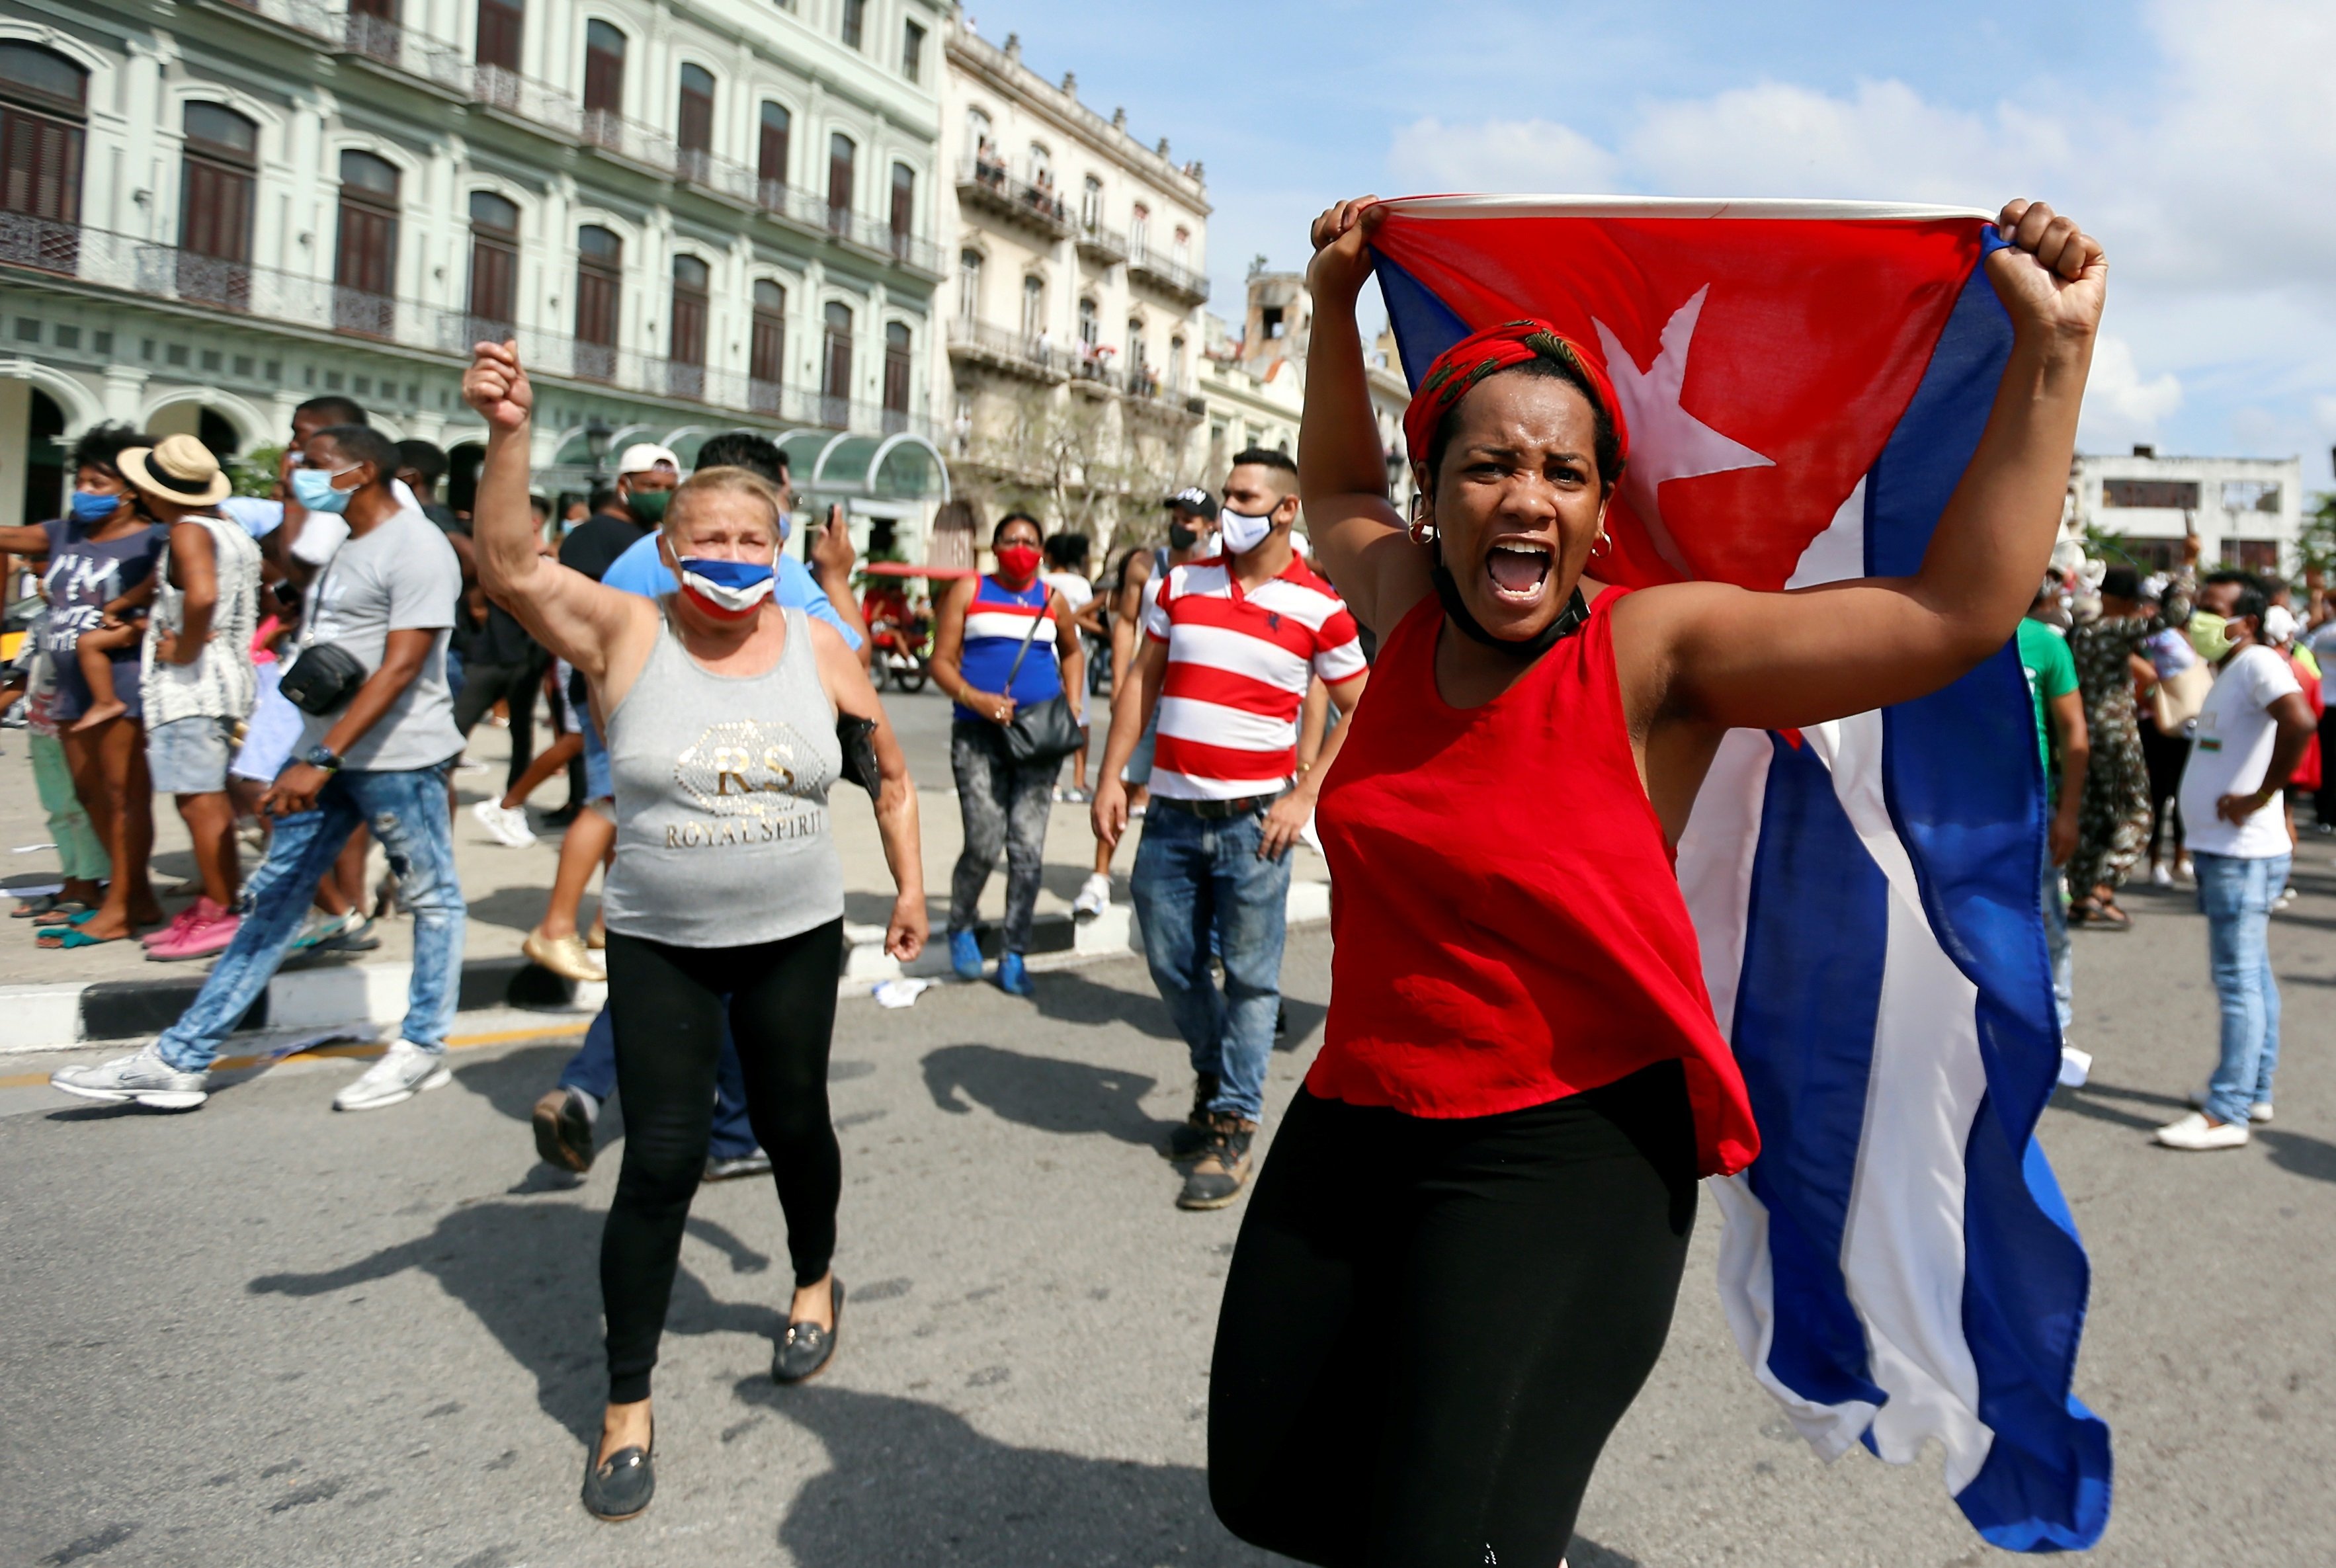 Allau de protestes espontànies a Cuba contra el règim per la precarietat